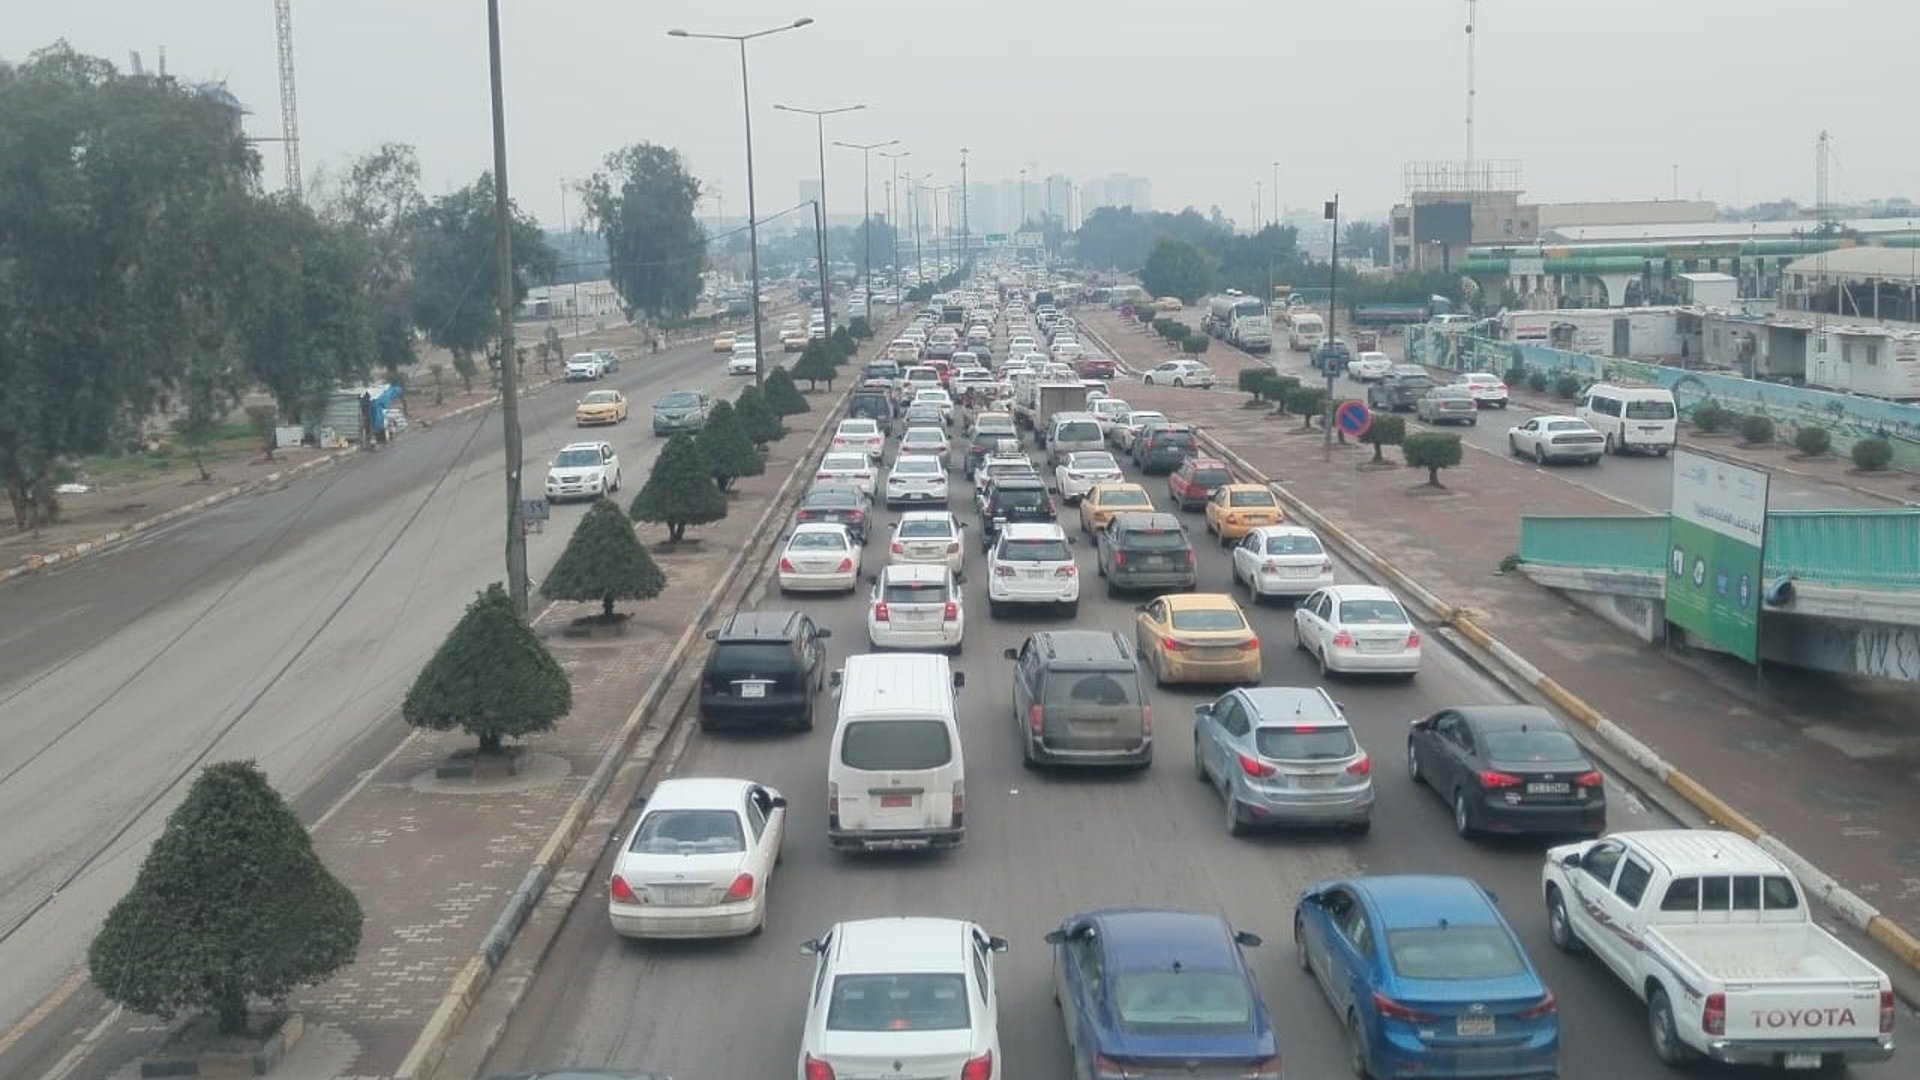 8 ملايين سيارة في العراق عام 2024 ومطالبات بوقف الاستيراد 5 سنوات